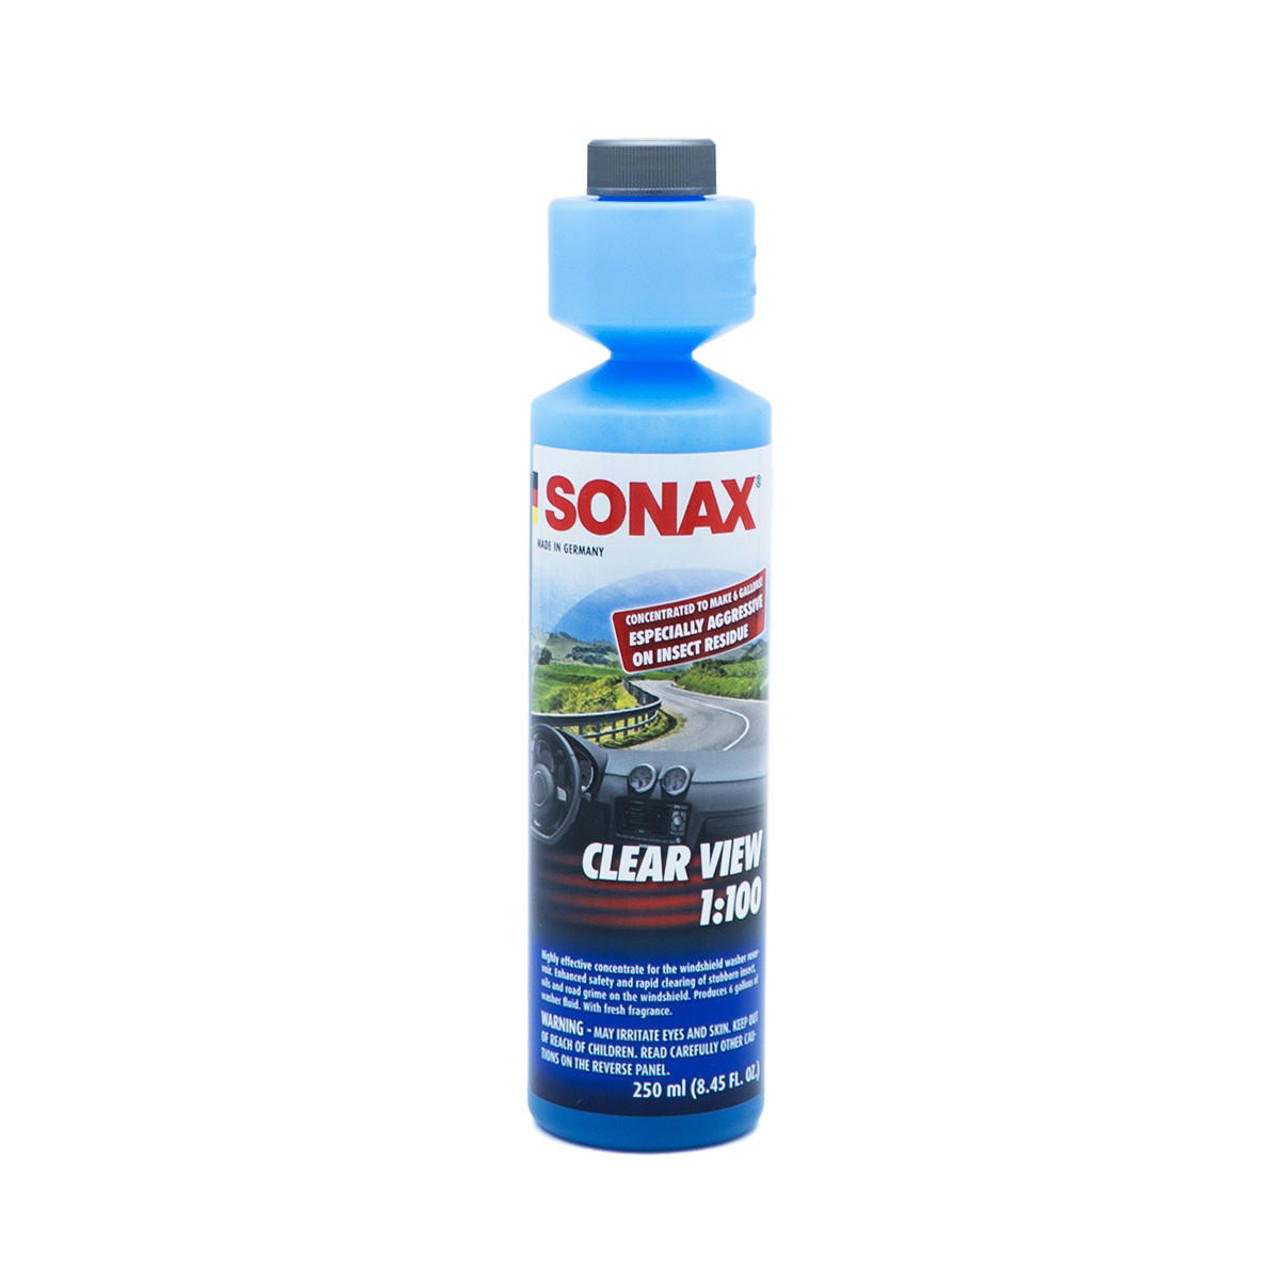 SONAX Winter Kit